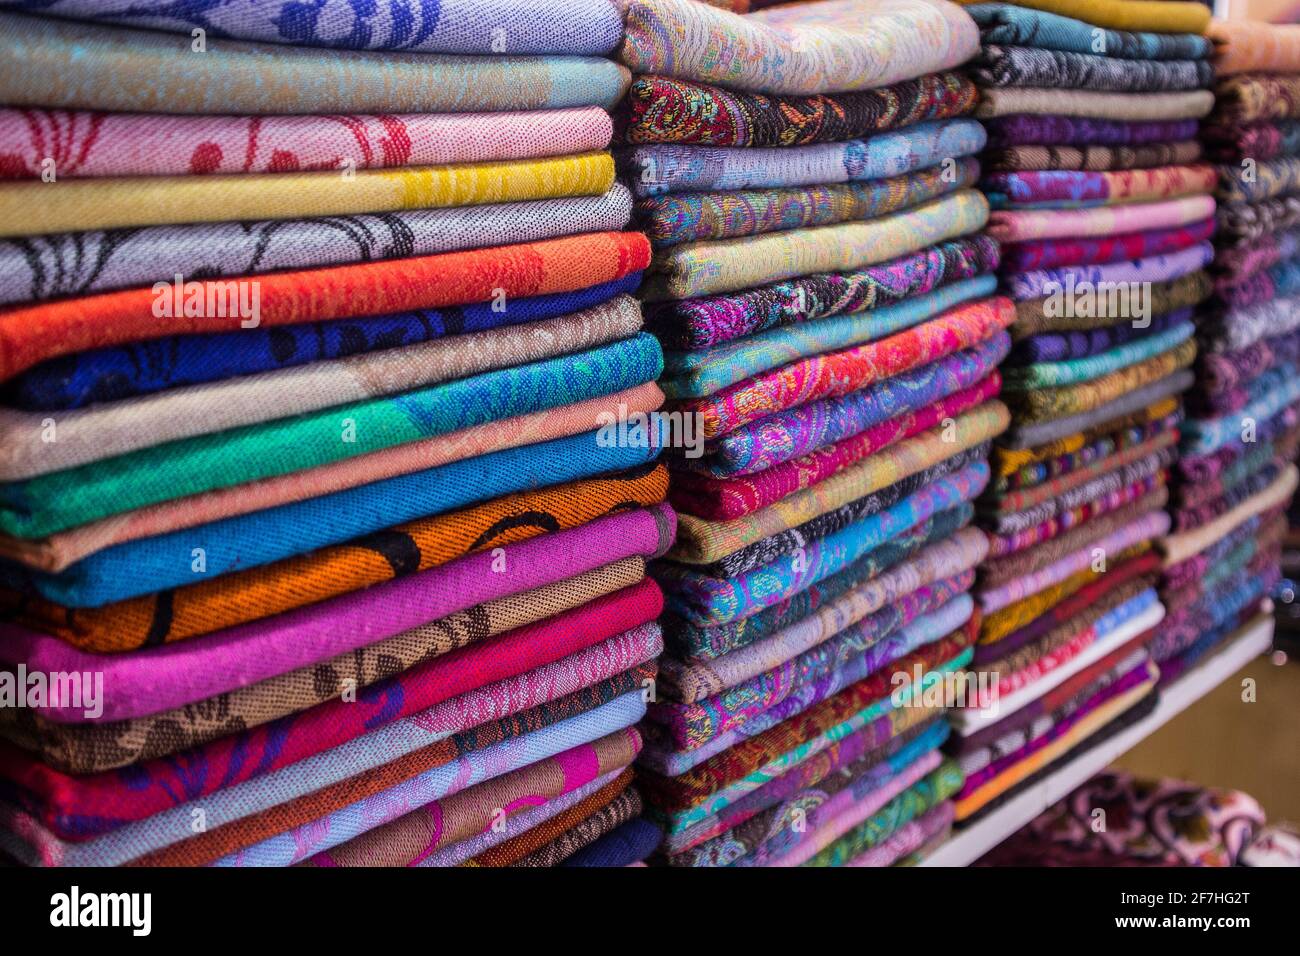 Des piles de couvertures turques de coton et de laine vendues sur le Grand Bazar à Istanbul, en Turquie. Tissu plié coloré vendu dans le Grand Bazar. Banque D'Images